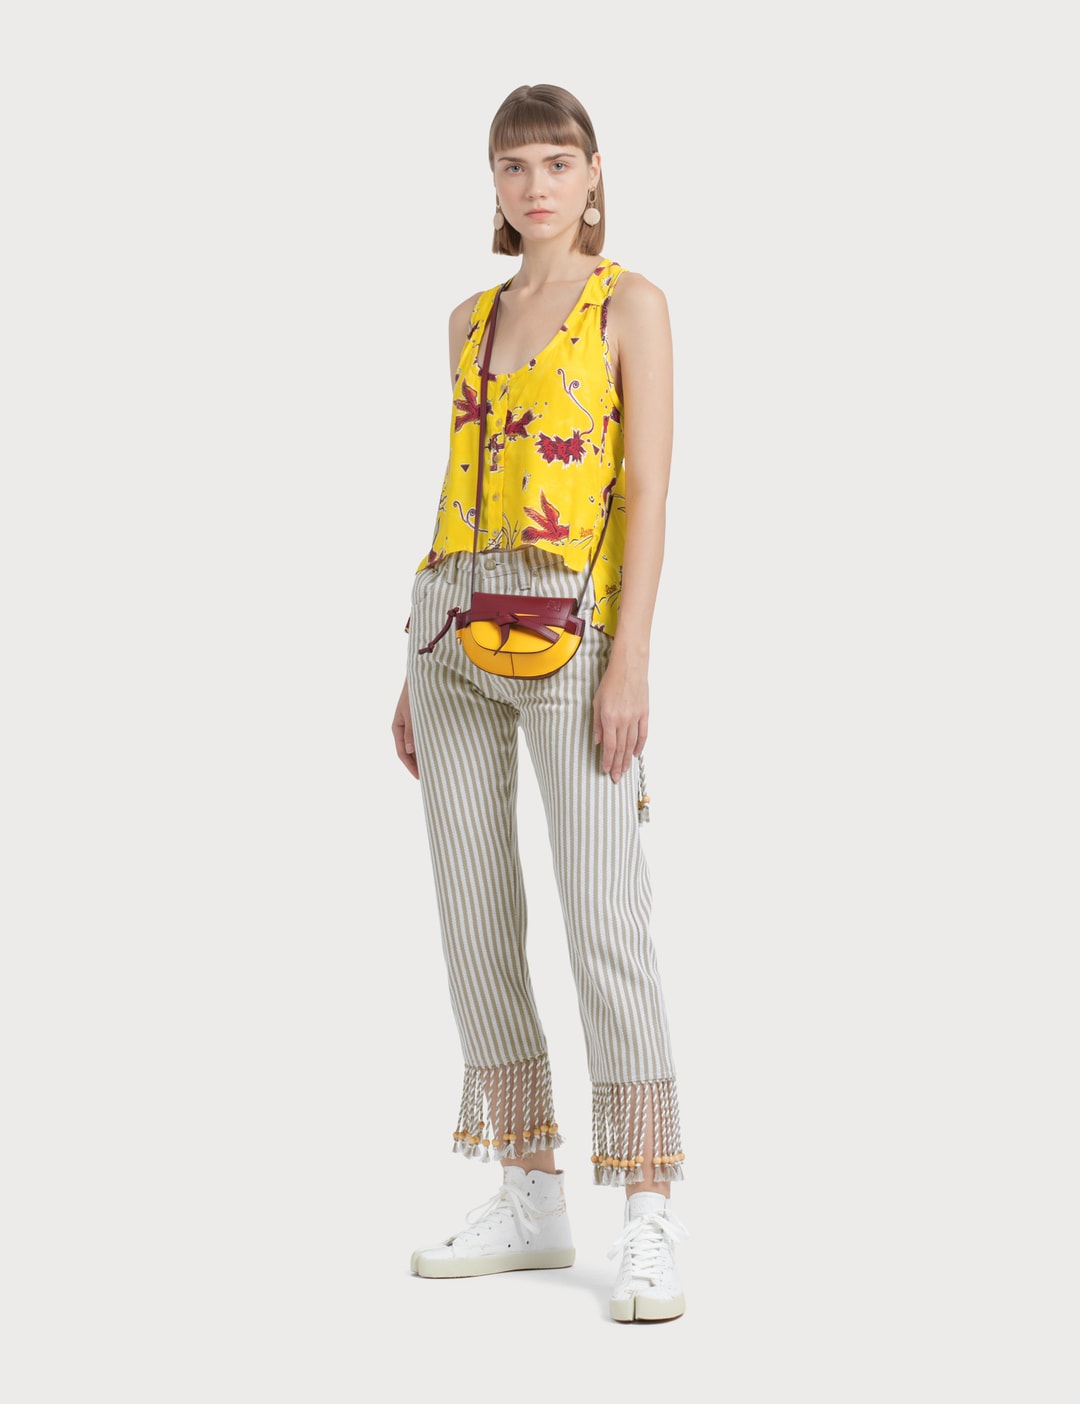 Loewe - Paula Stripes 5 Pockets Pants | HBX - Globally Curated Fashion ...